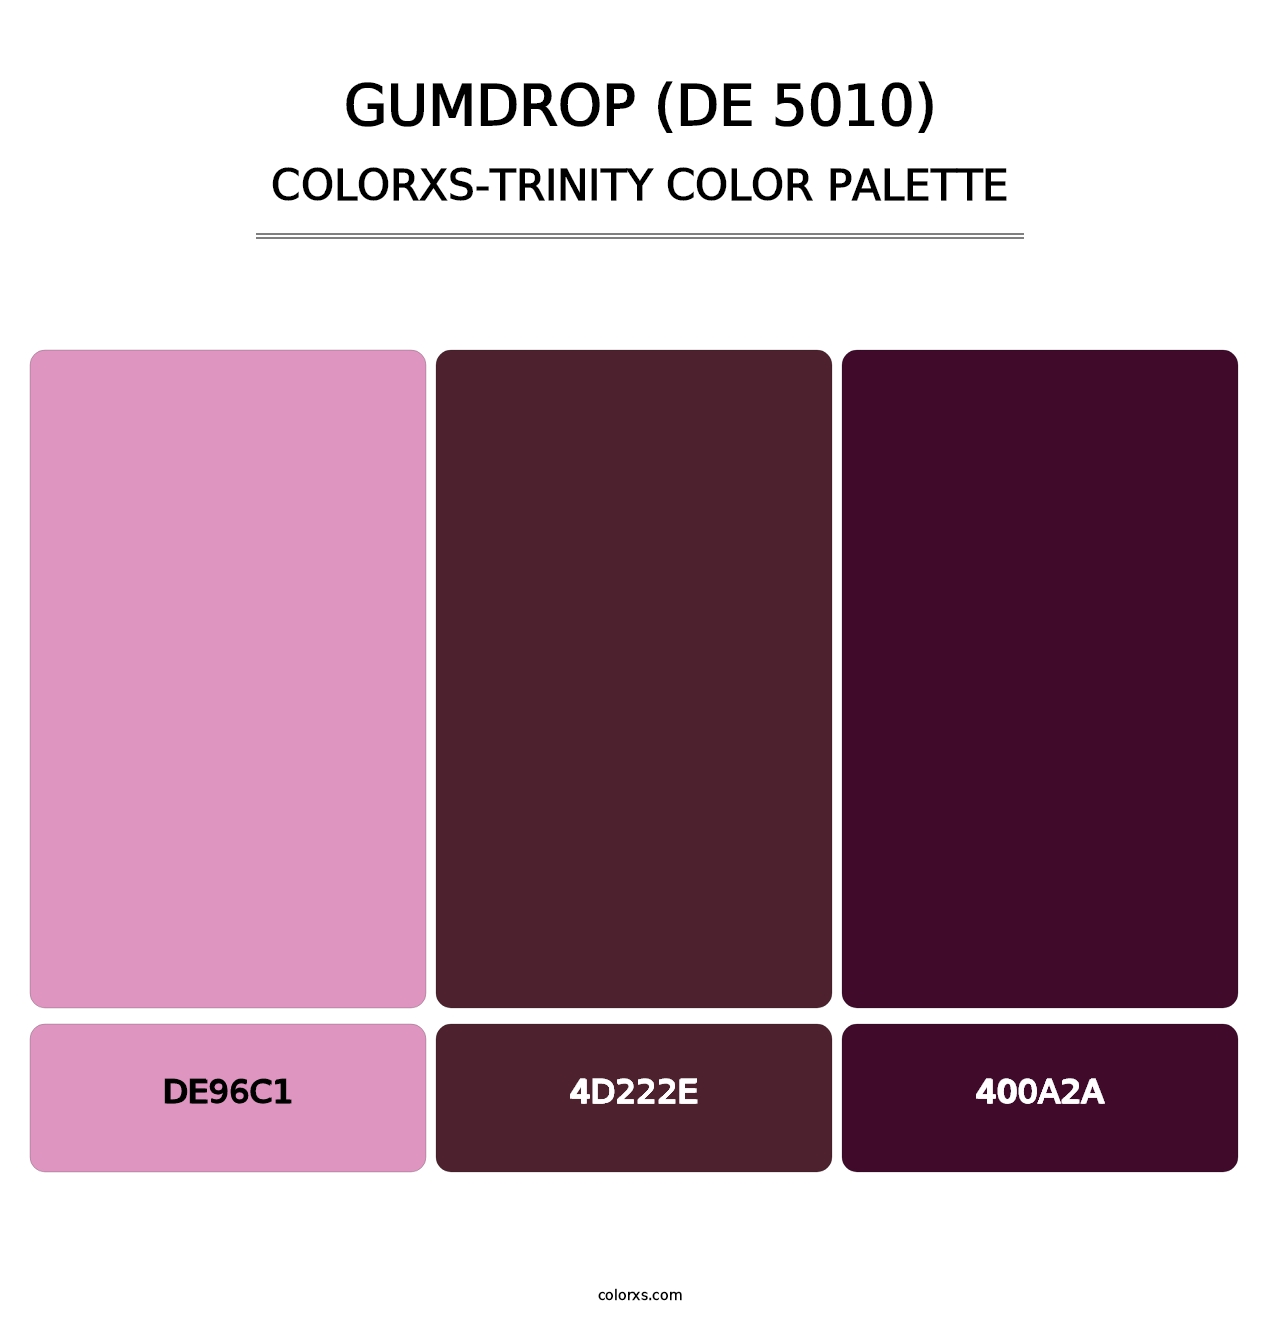 Gumdrop (DE 5010) - Colorxs Trinity Palette